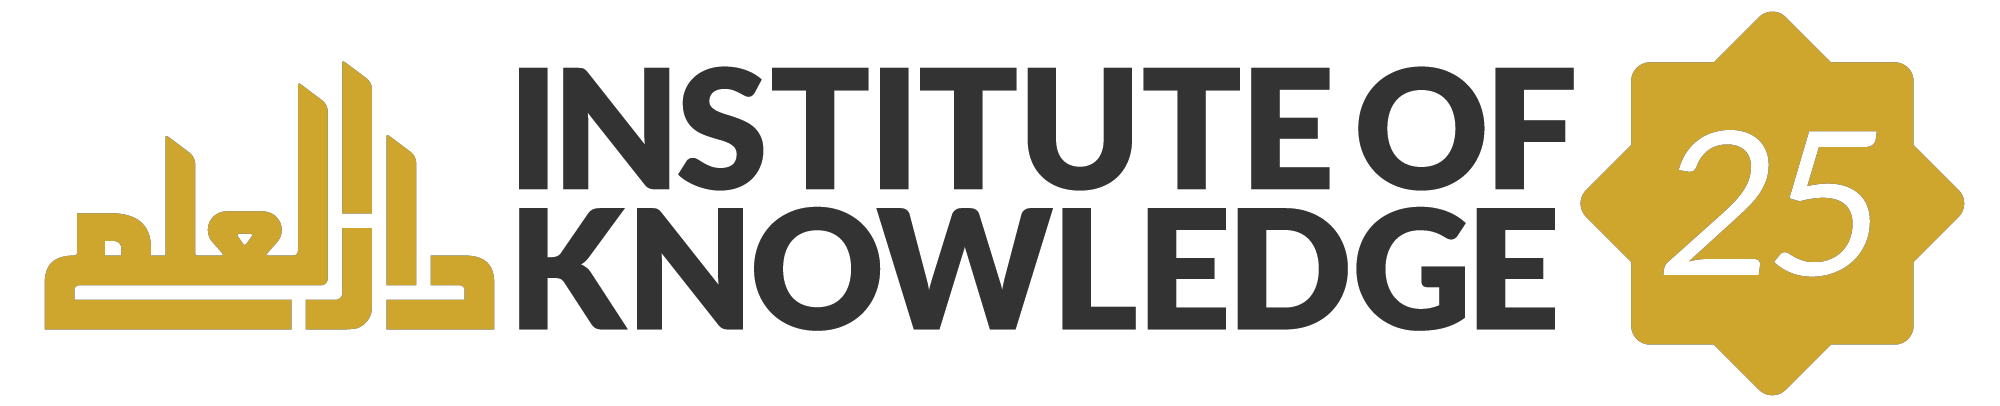 Institute of Knowledge Logo